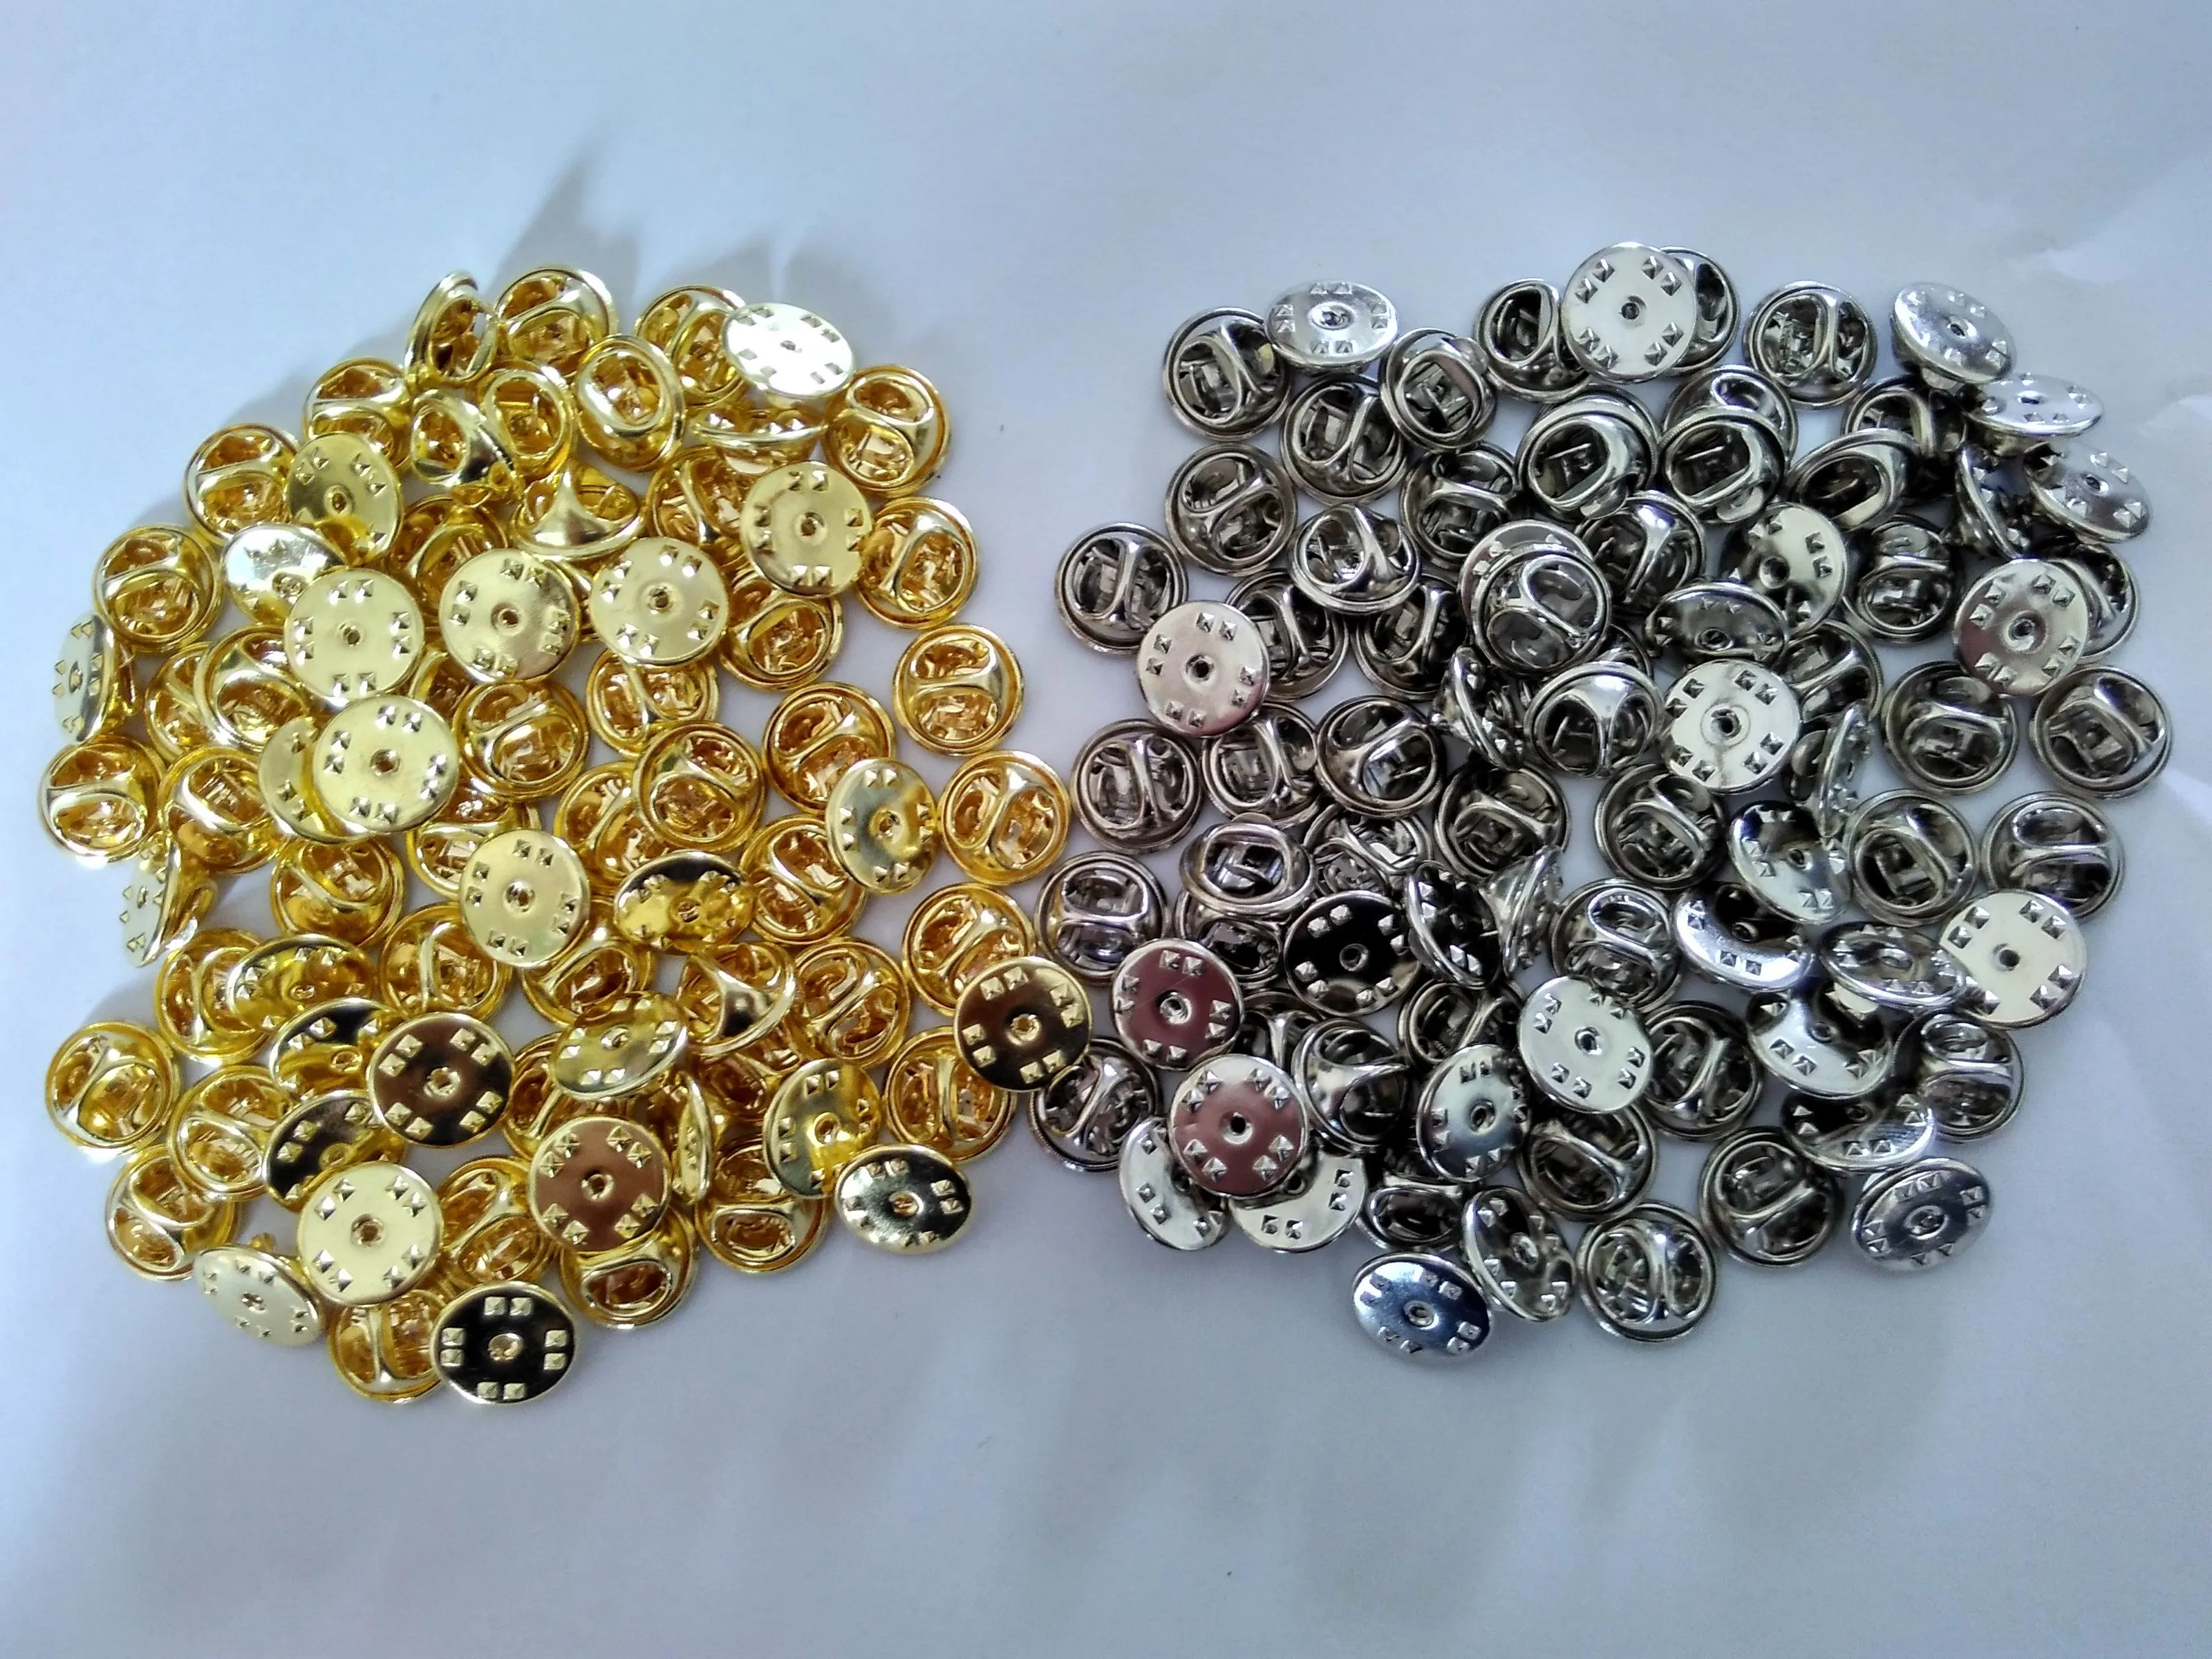 10mm post nagels sluiting goud zilver messing stropdas kopspijkers tacs vlinder pin badge revers terug koppeling voor kleding sieraden bevindingen broches1635